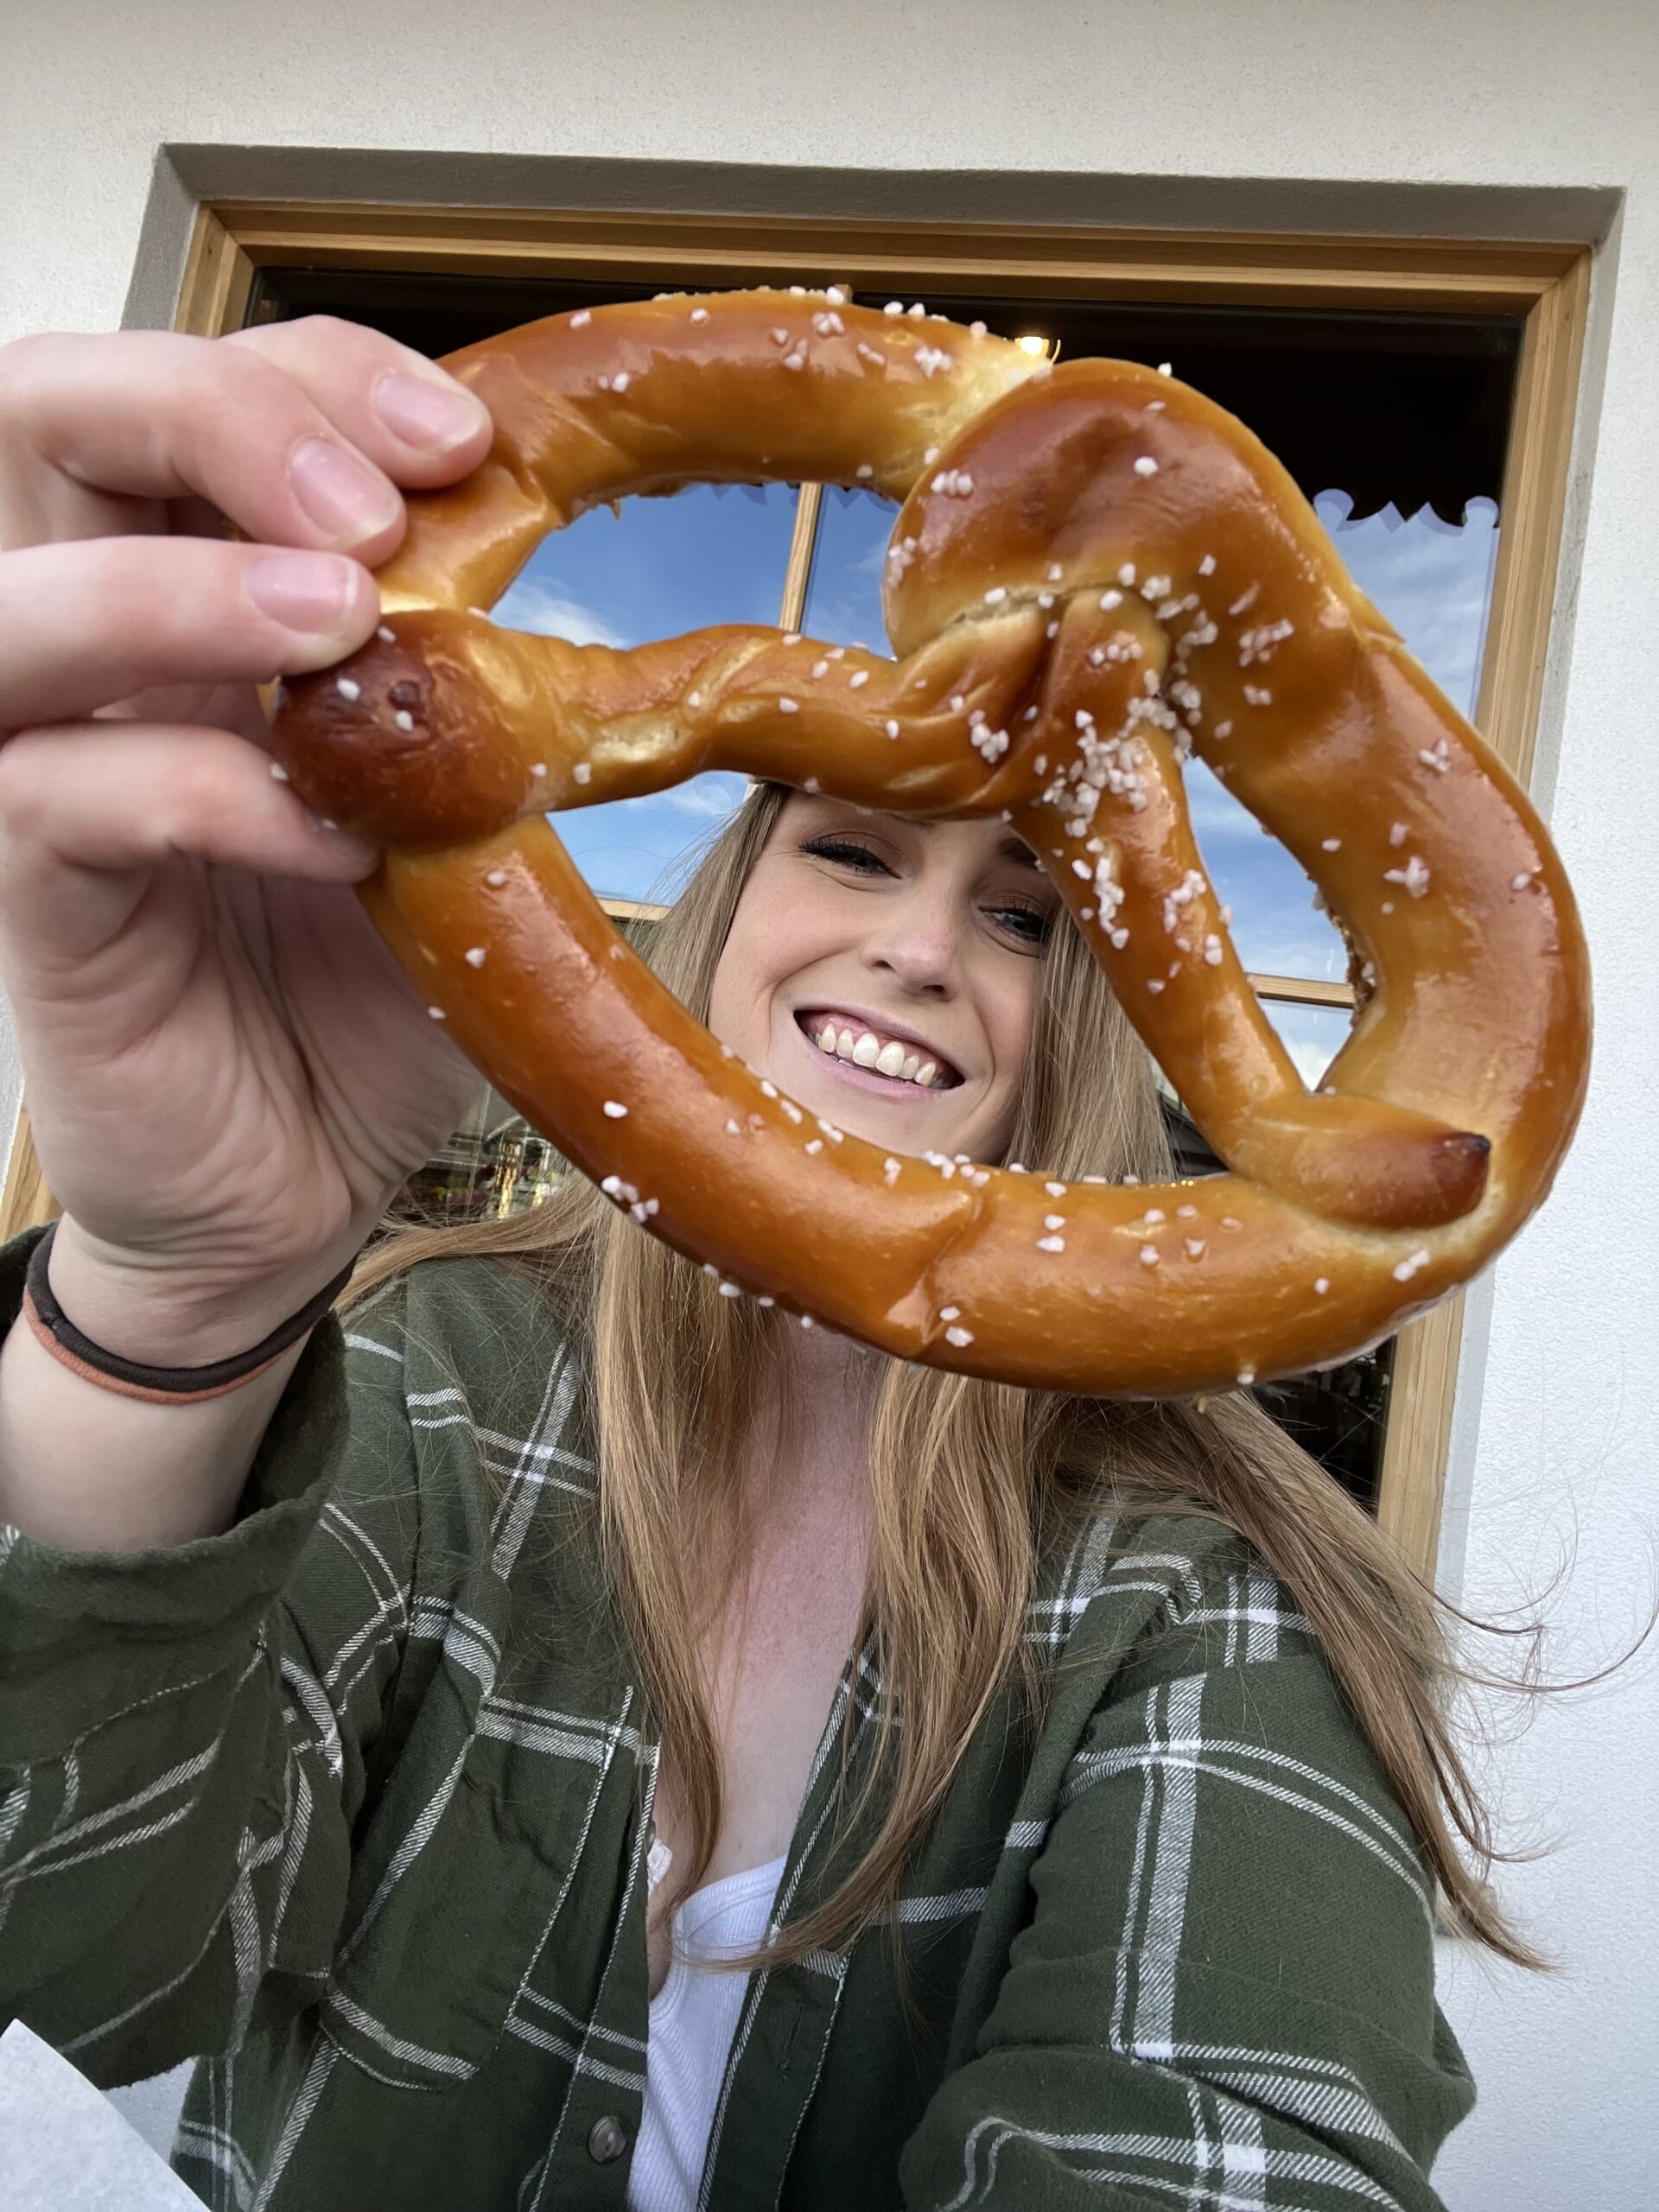 Leavenworth Restaurants: A Foodie’s Guide